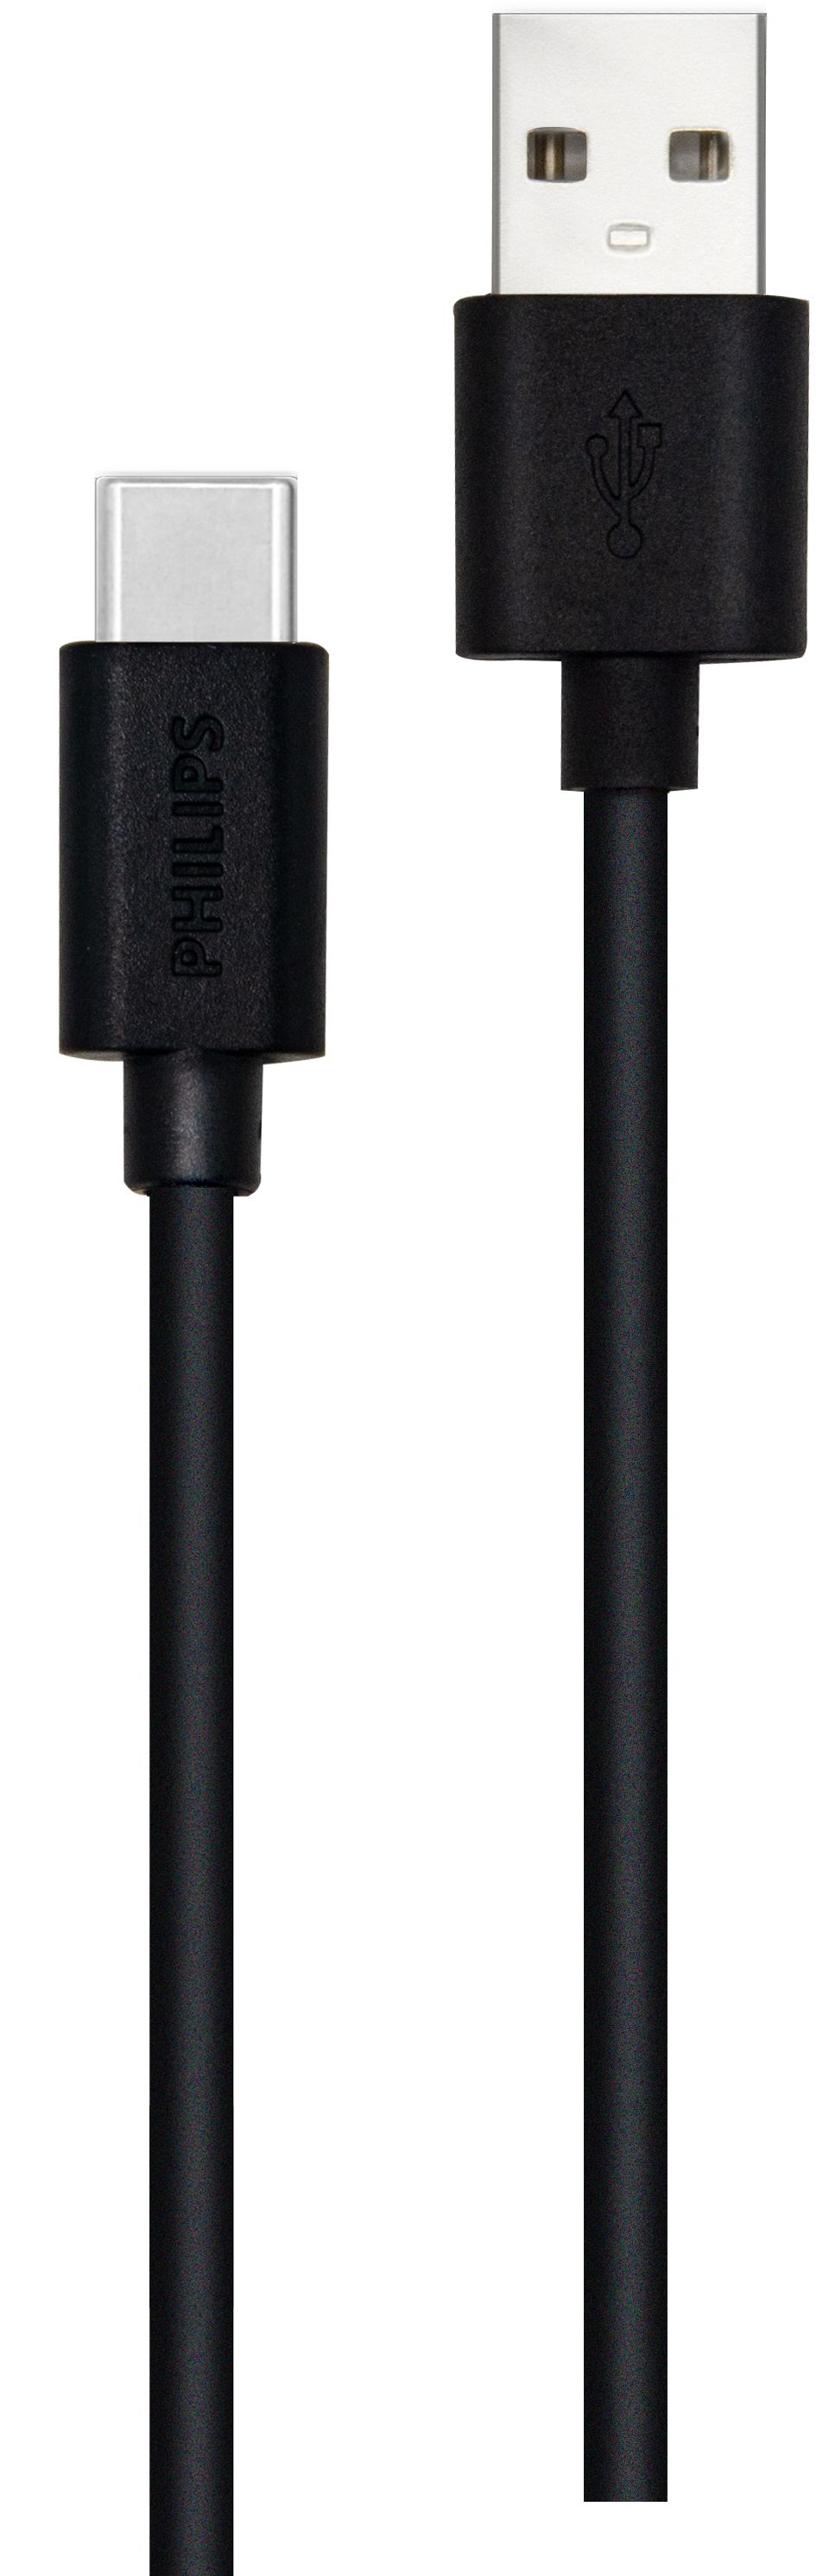 كبل للتحويل من USB A إلى USB-C بطول 1,2 م